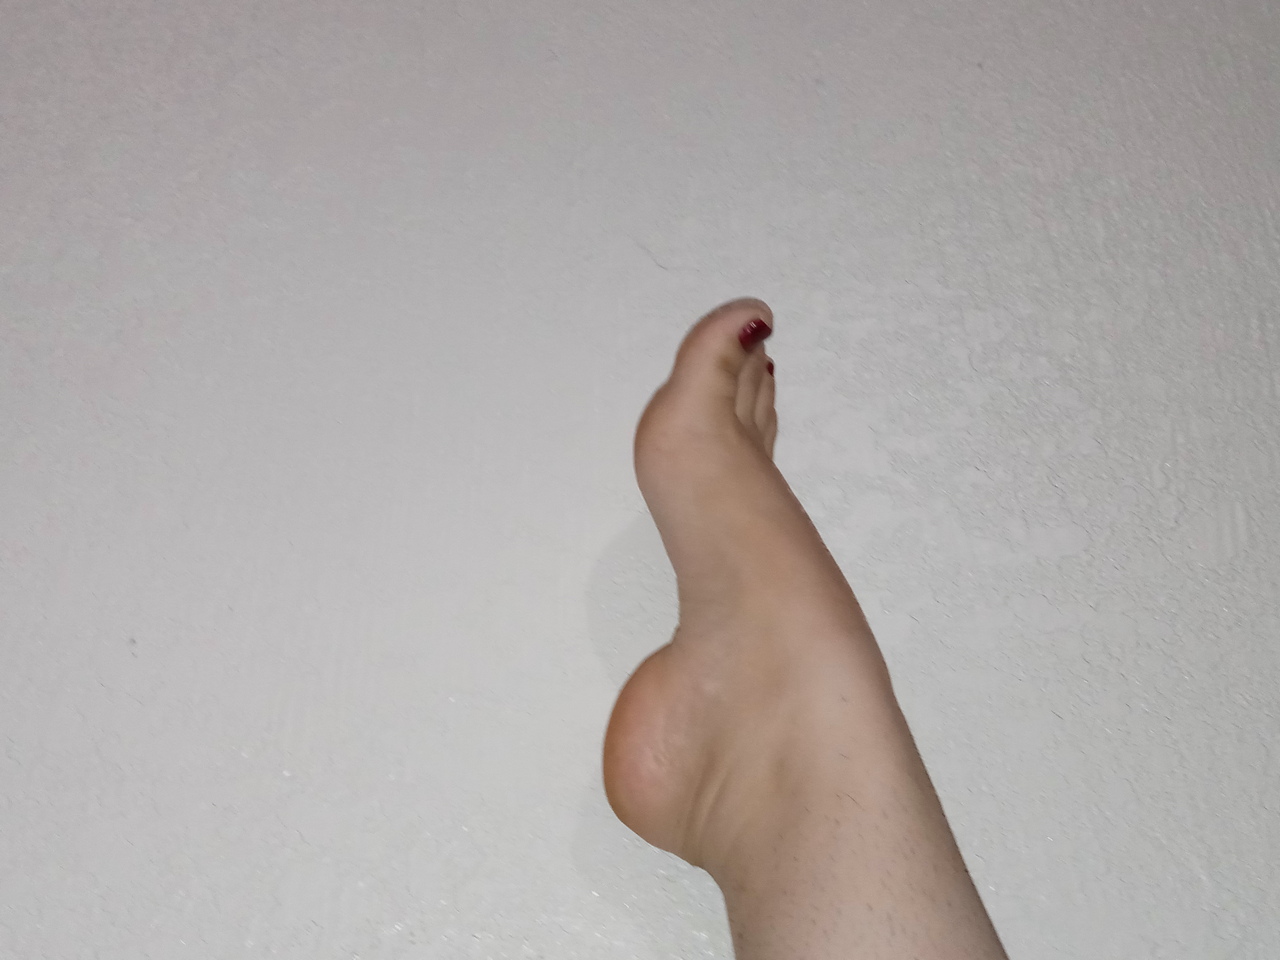 Lillylush Feet